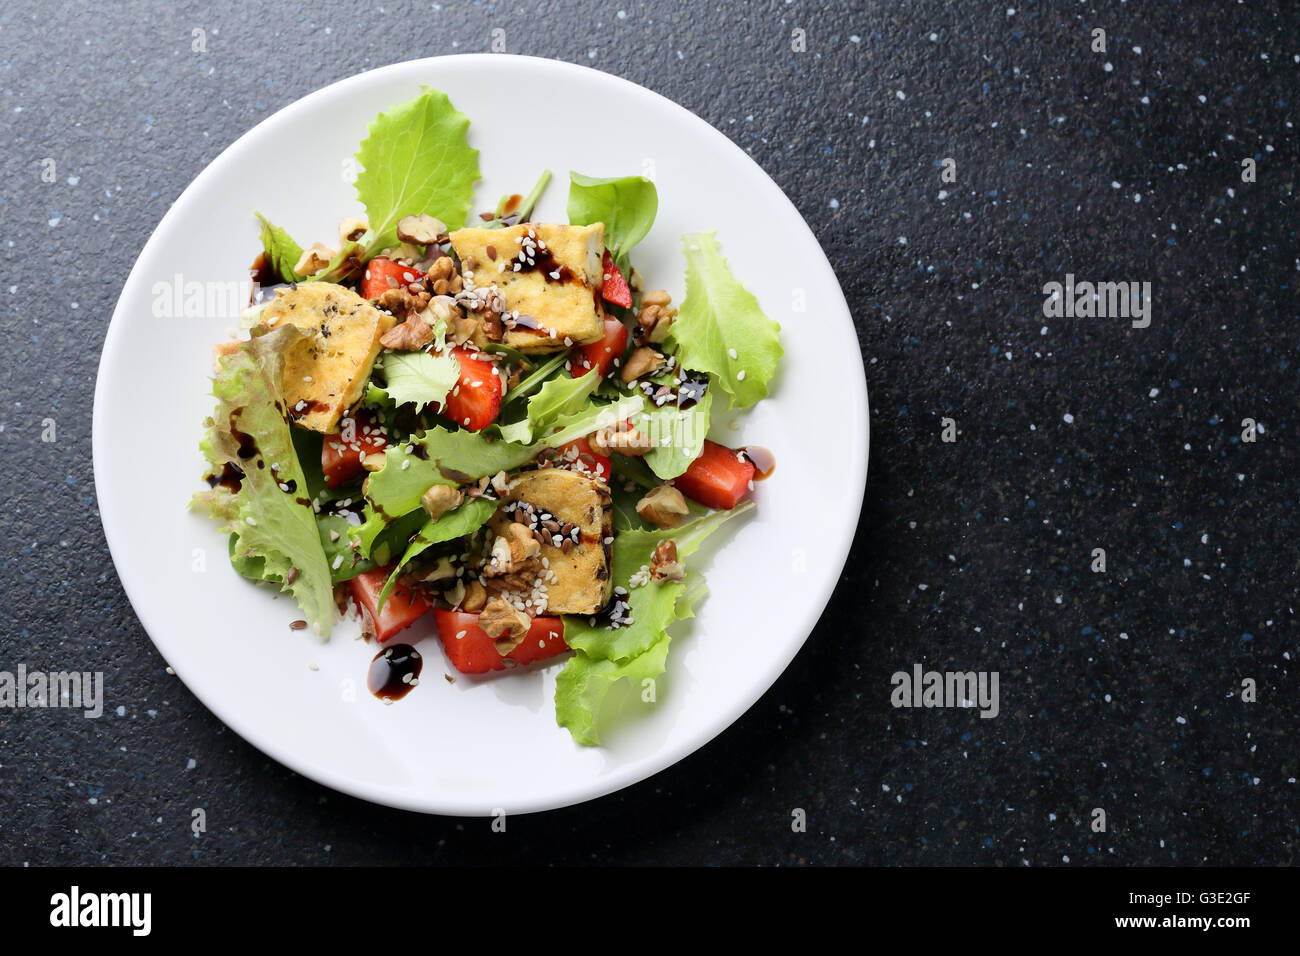 Salade de tofu vegan rôti, de l'alimentation vue d'en haut Banque D'Images